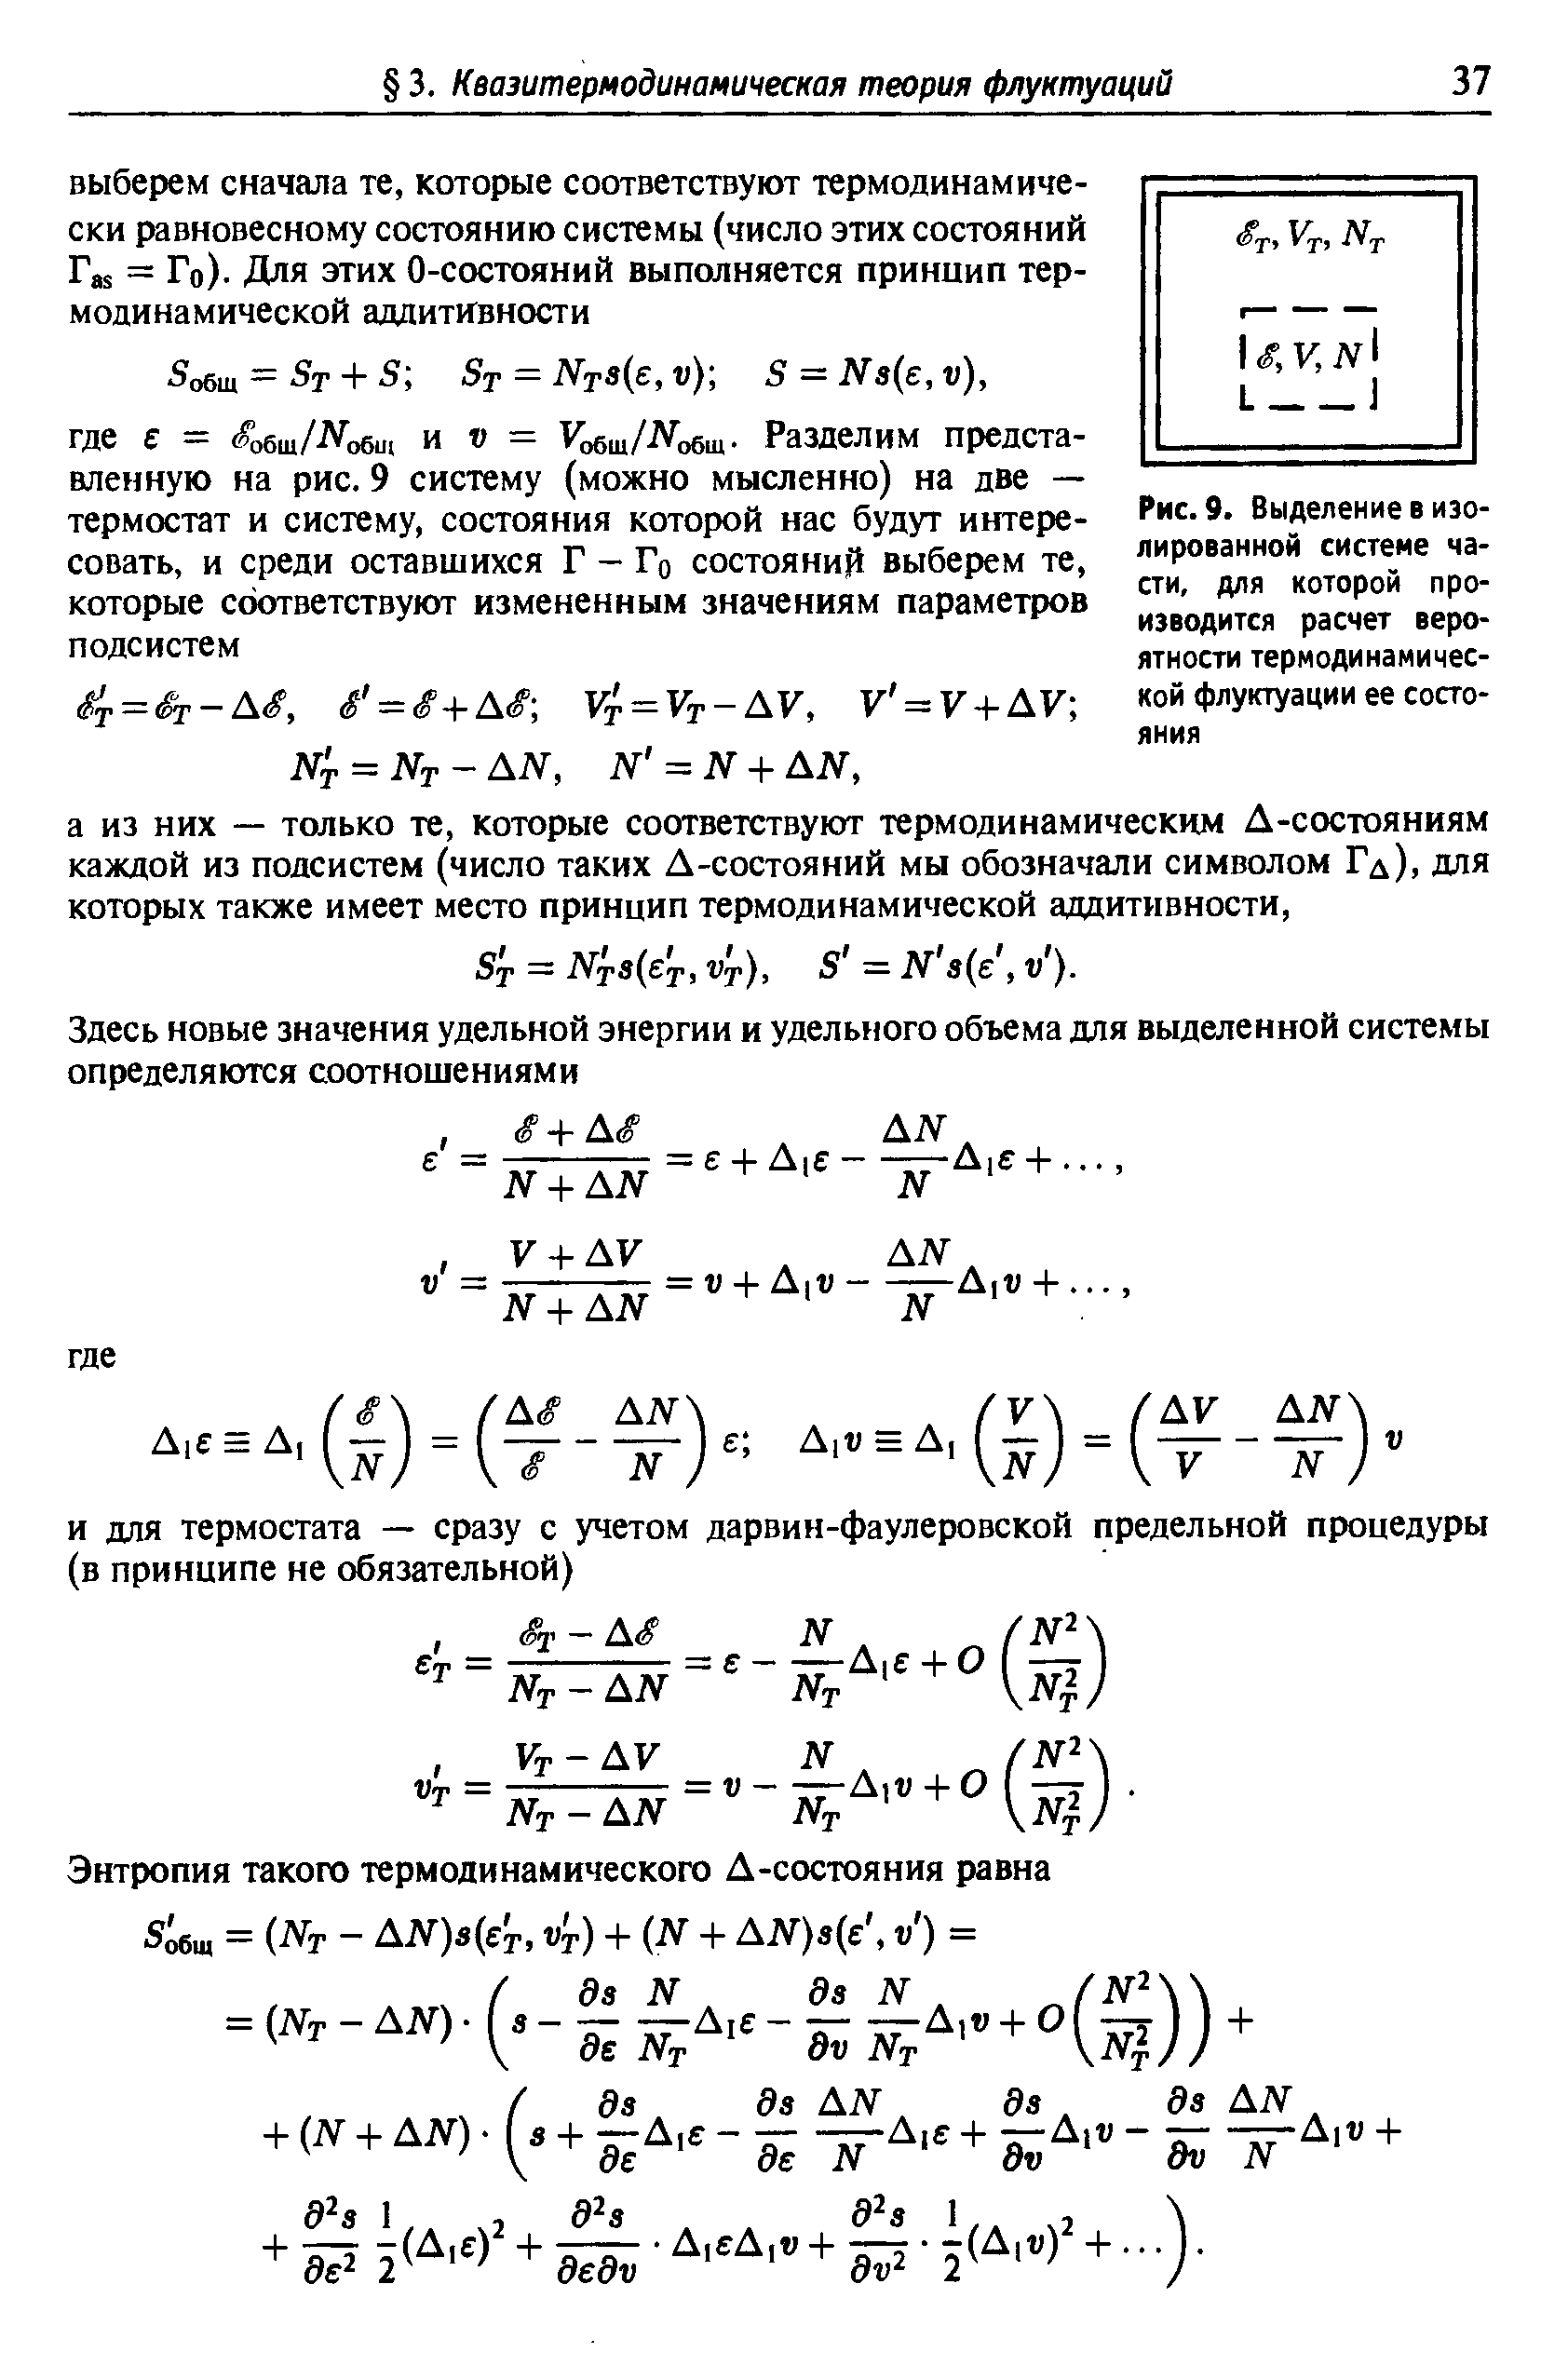 Рис. 9. Выделение в изолированной системе части, для которой производится расчет вероятности термодинамической флуктуации ее состояния
